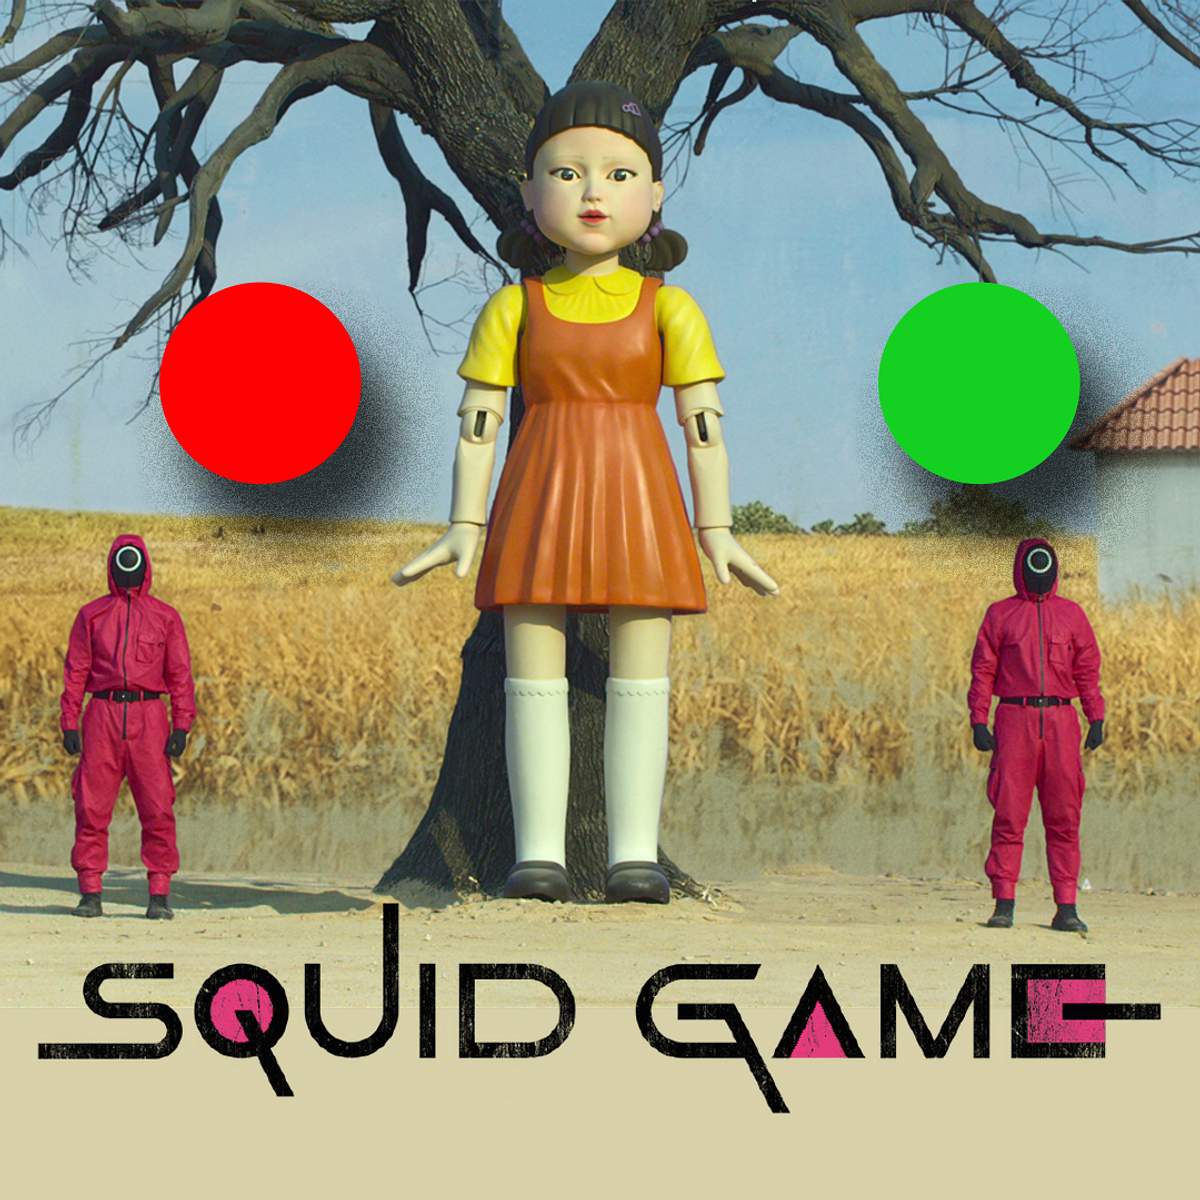 Rotes Licht, grünes Licht“ Spiel: Squid Game“ Version & für drinnen